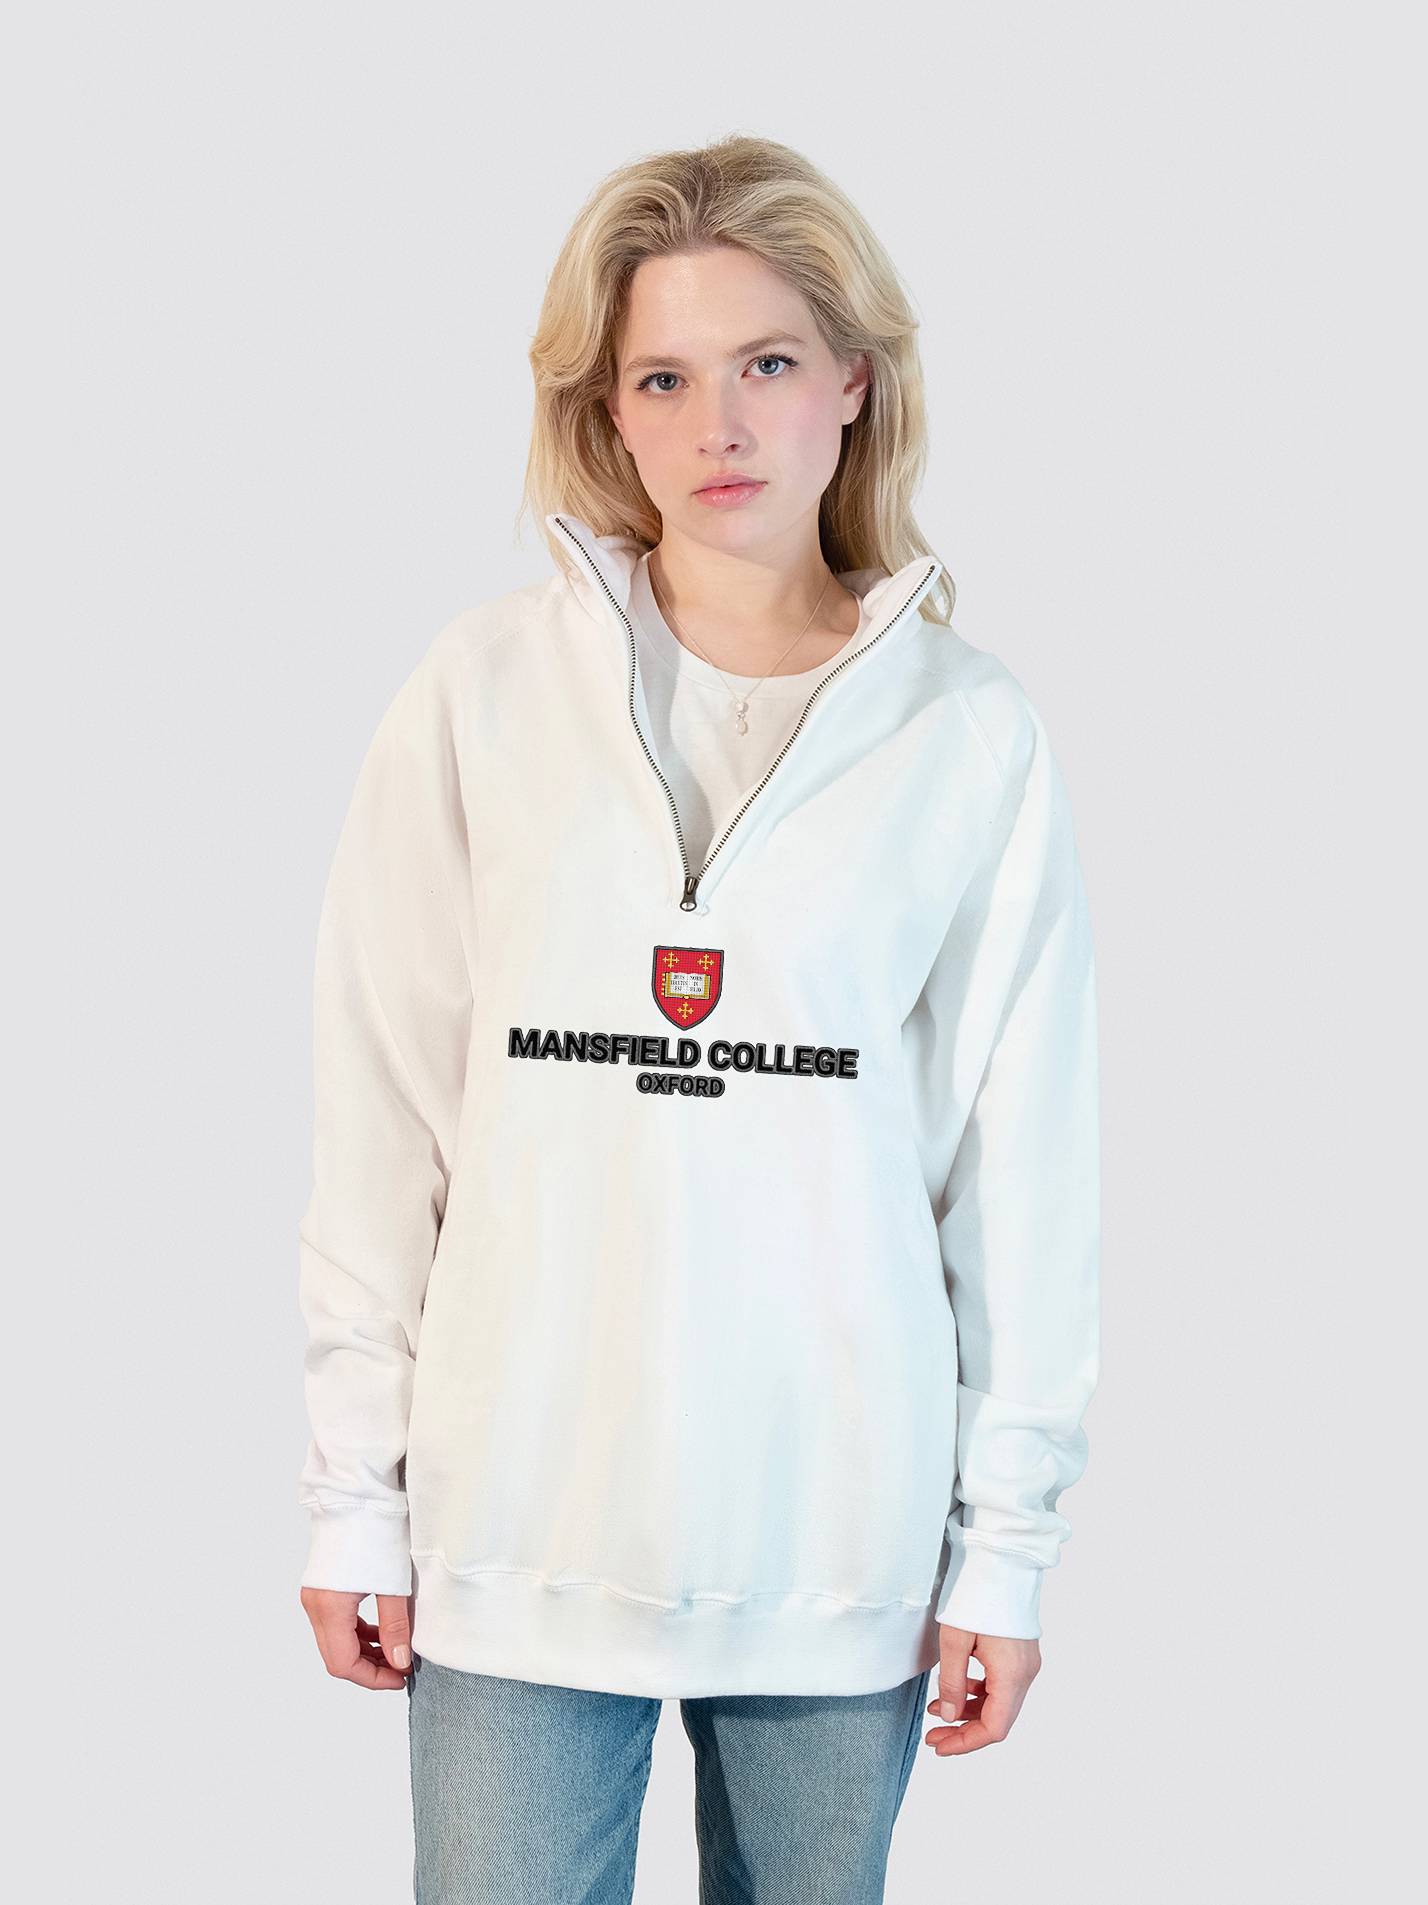 Mansfield College Oxford Heritage Unisex 1/4 Zip Sweatshirt